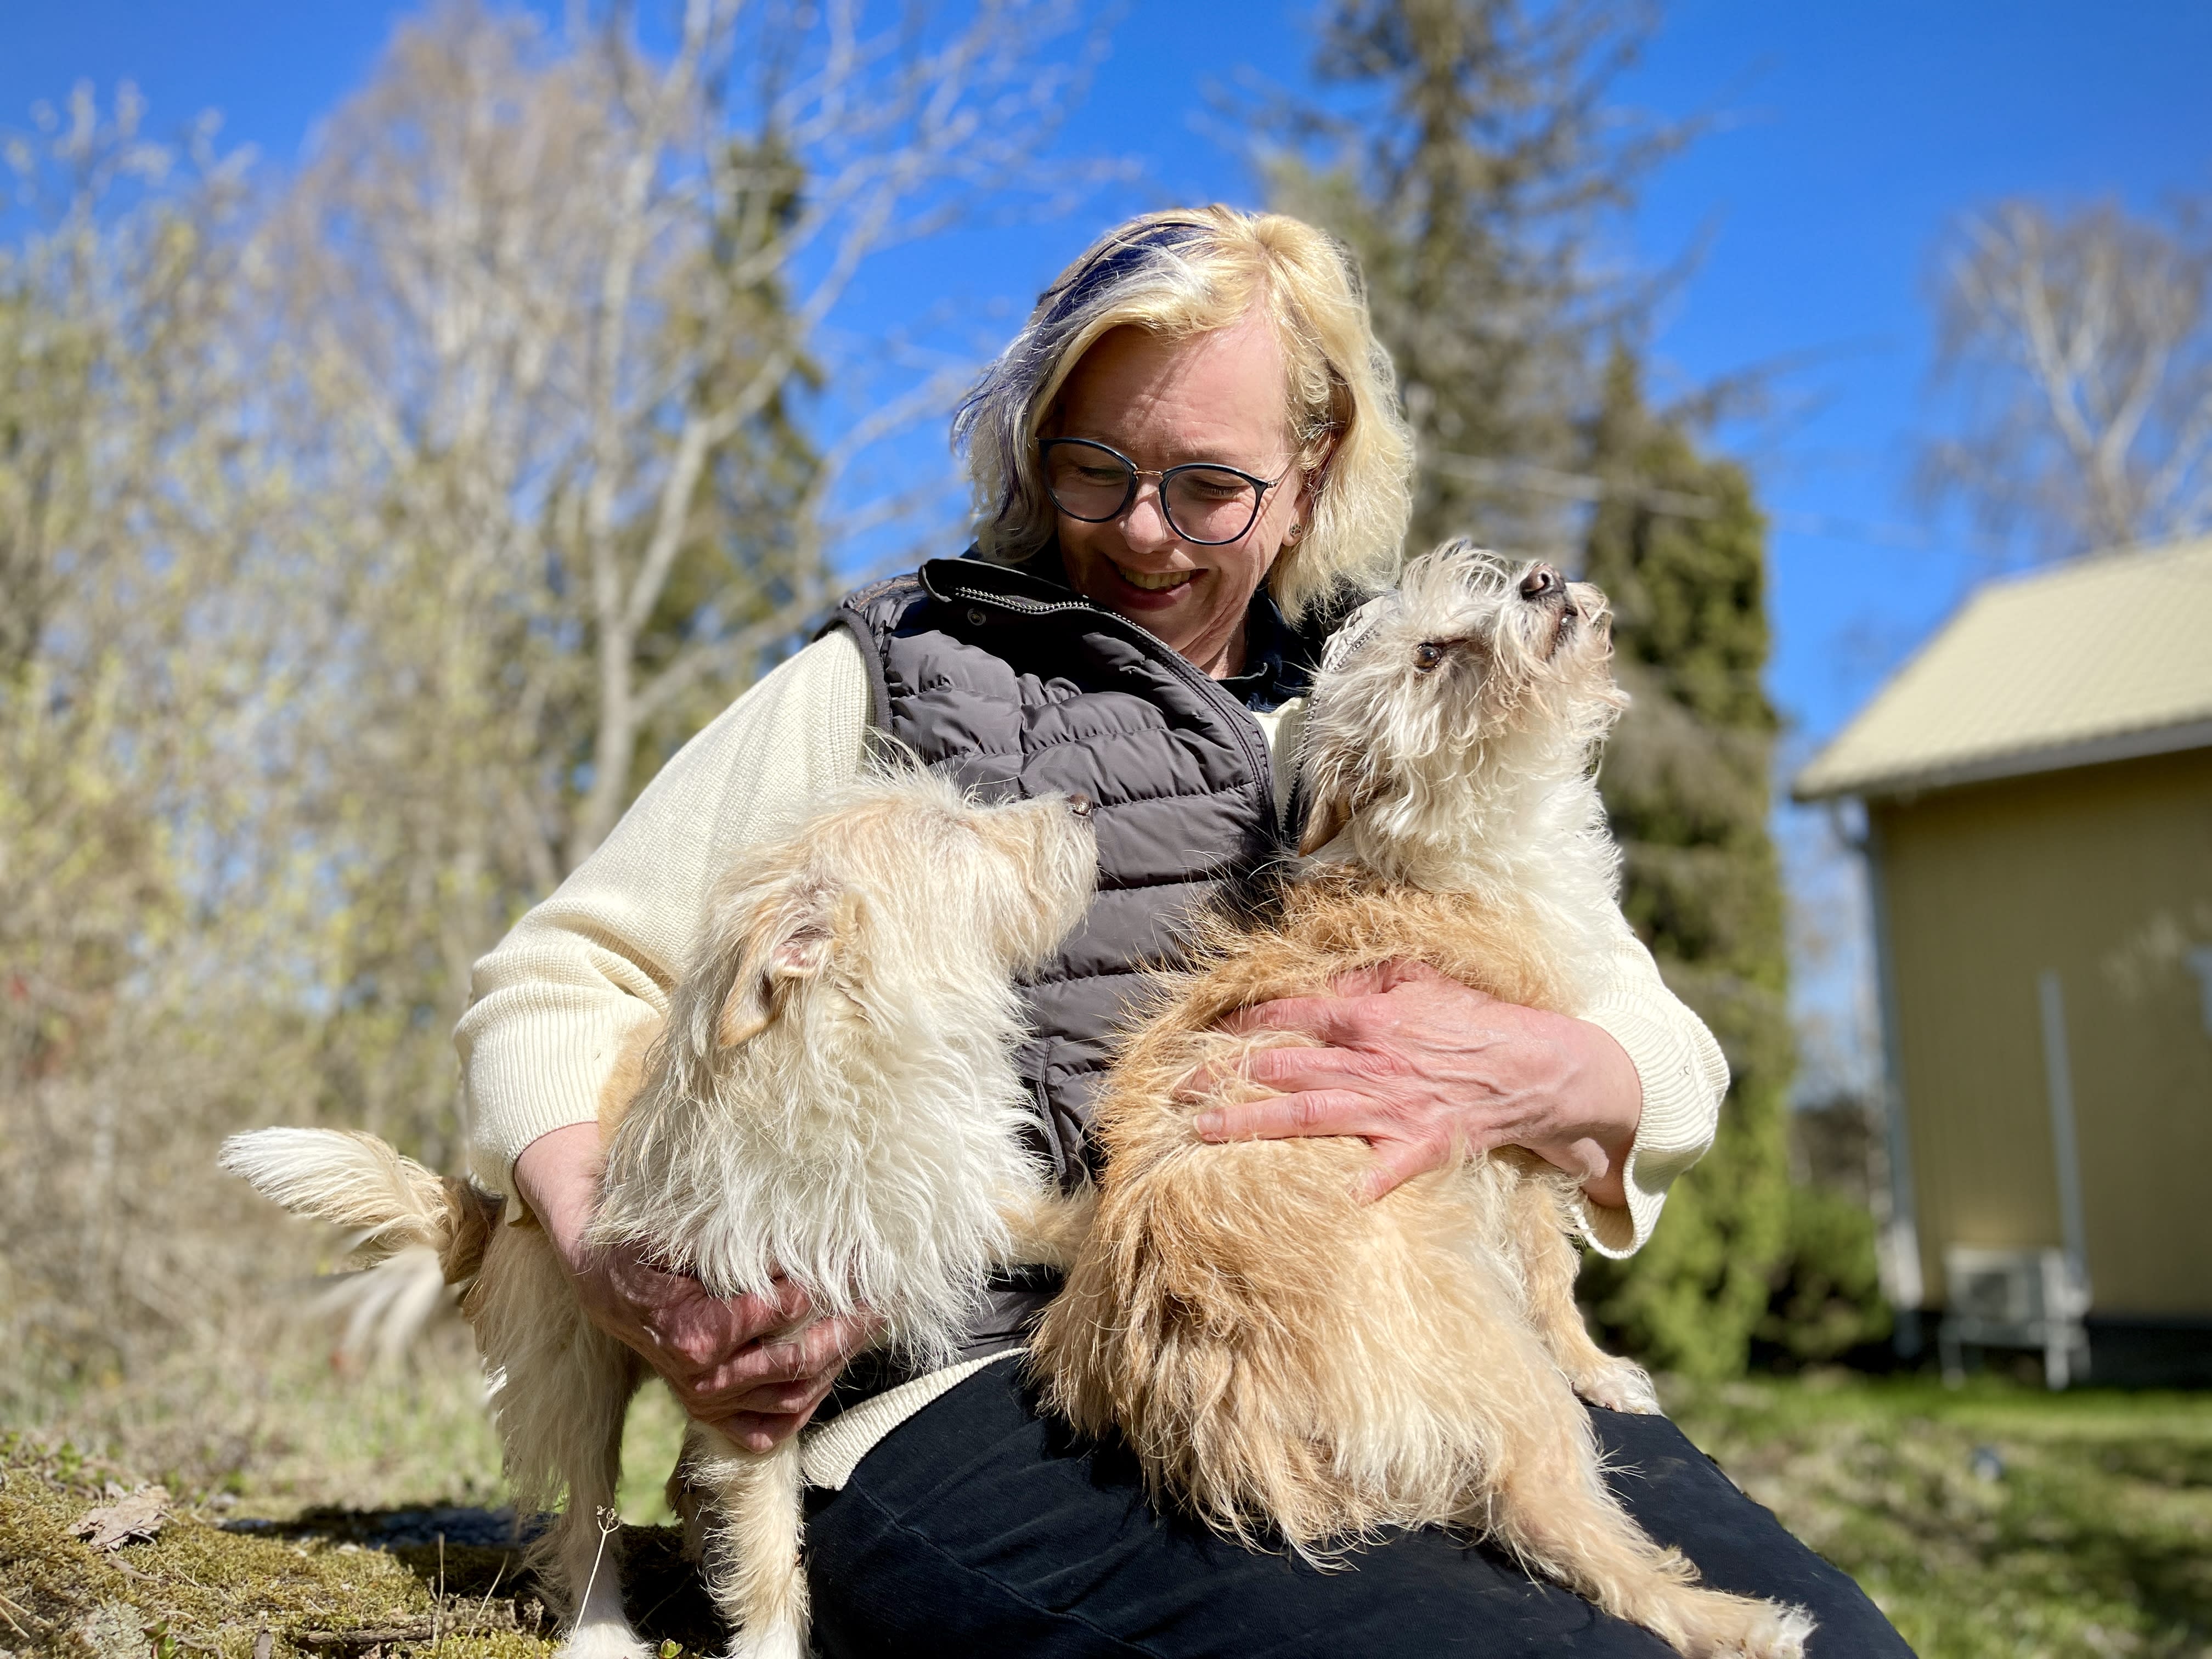 Finnland führt ein umstrittenes Hunderegistrierungssystem ein